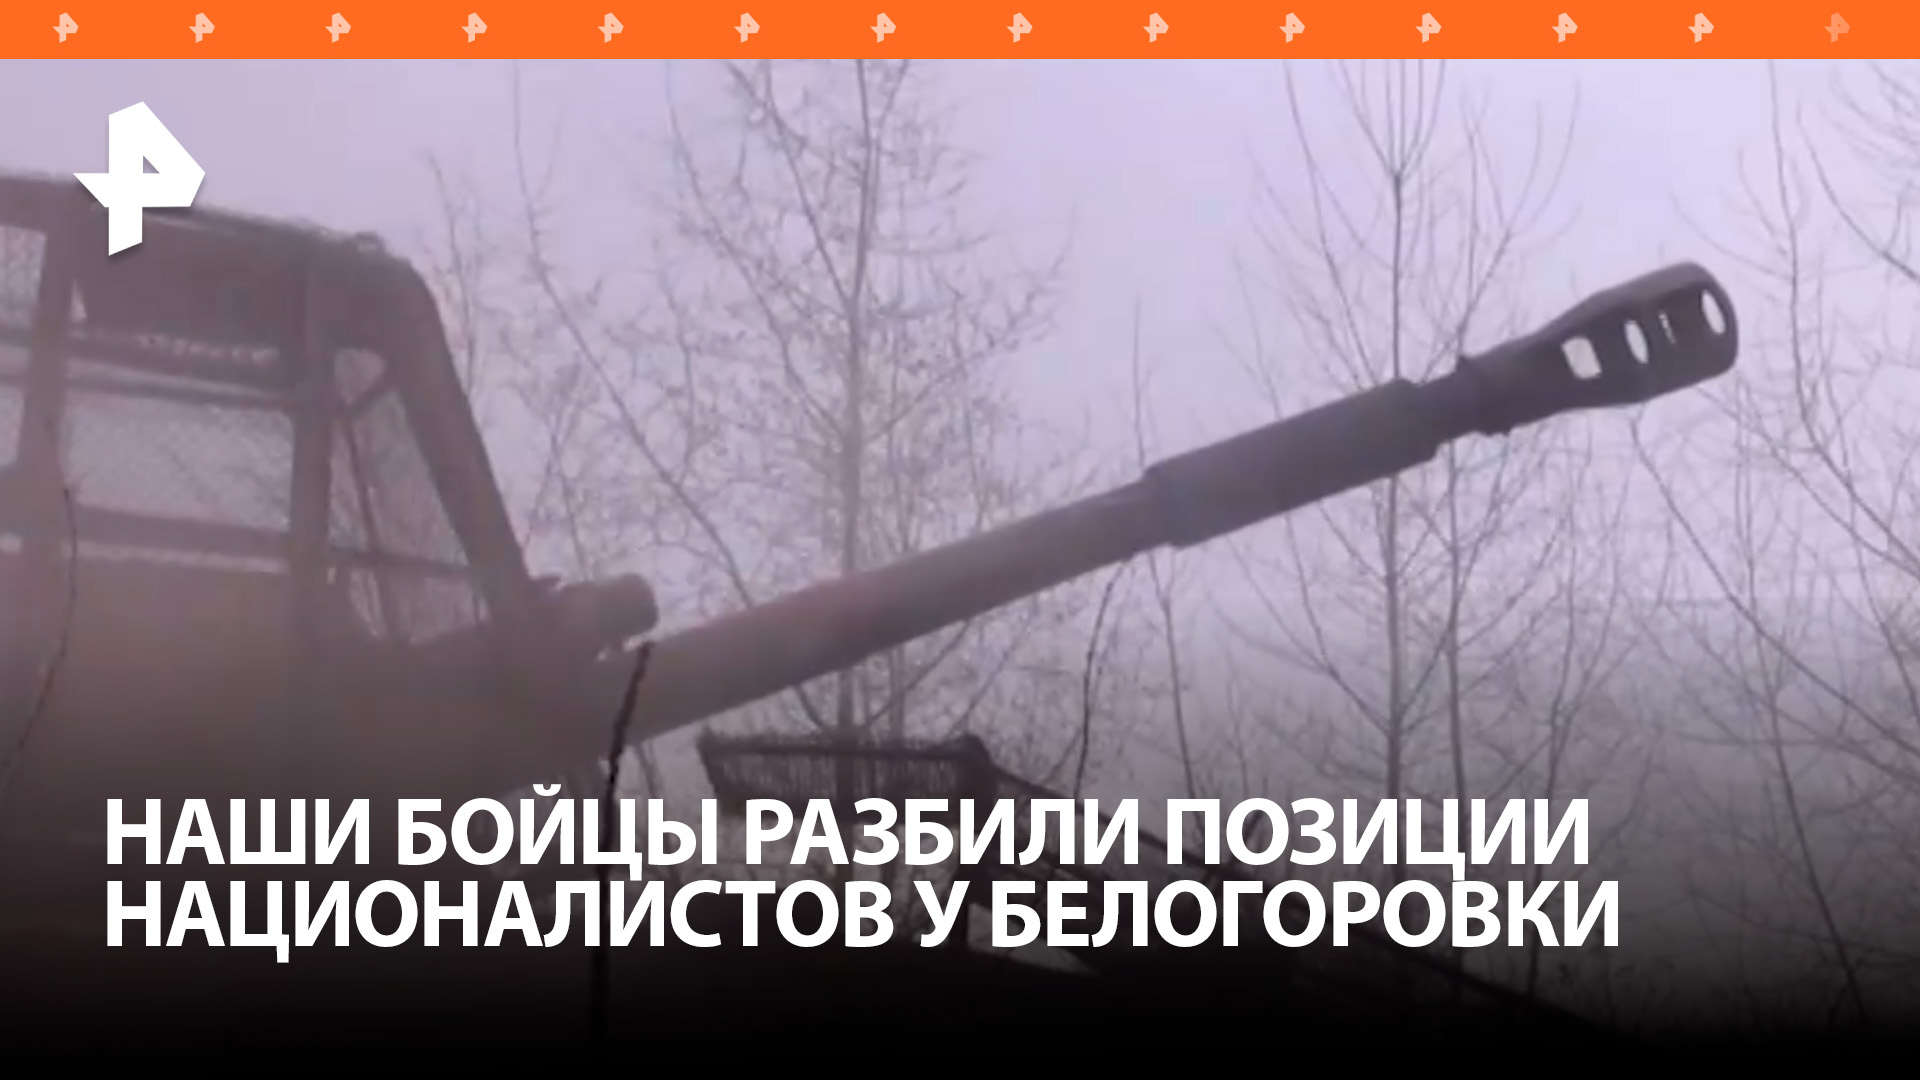 Российские военные разбили позиции ВСУ в районе Белогоровки / РЕН Новости